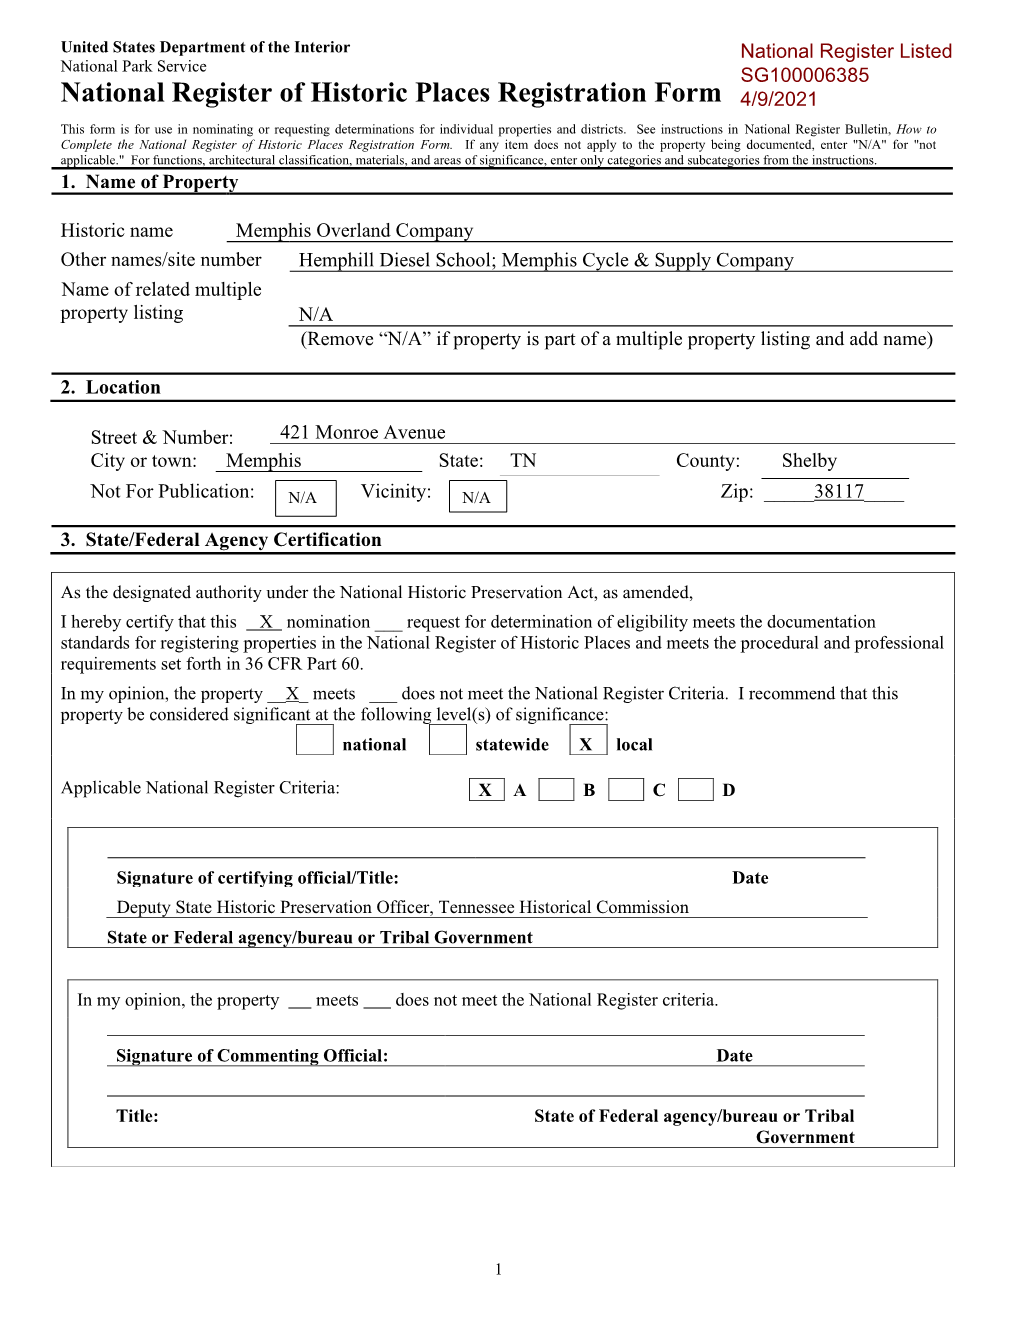 National Register of Historic Places Registration Form 4/9/2021